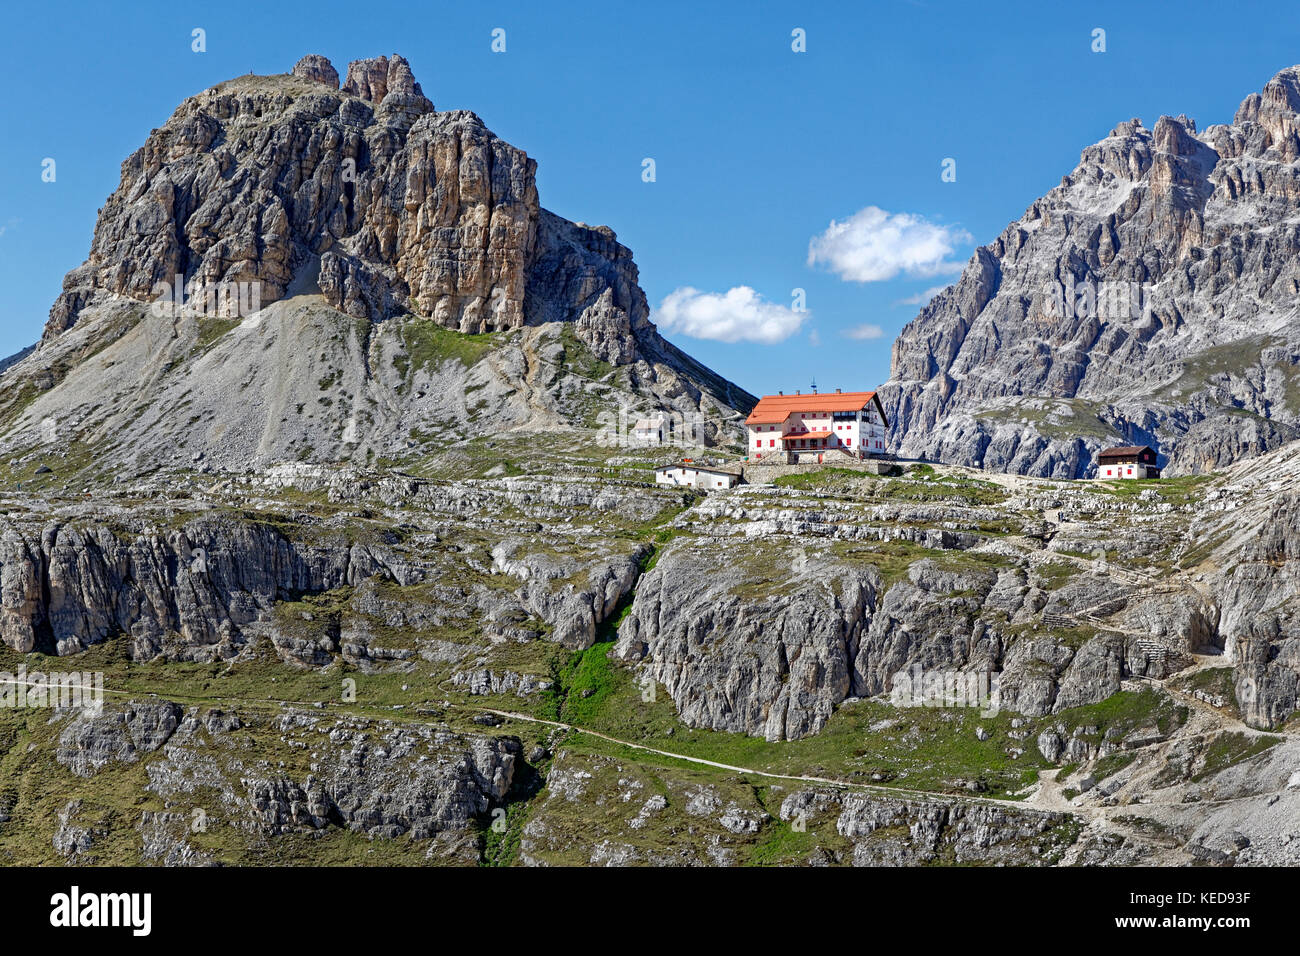 Dreizinnenhüdreizinnenhut, nel retro sextnerstein, nationalpark Dolomiti di Sesto, alto adige, italia, europa Foto Stock